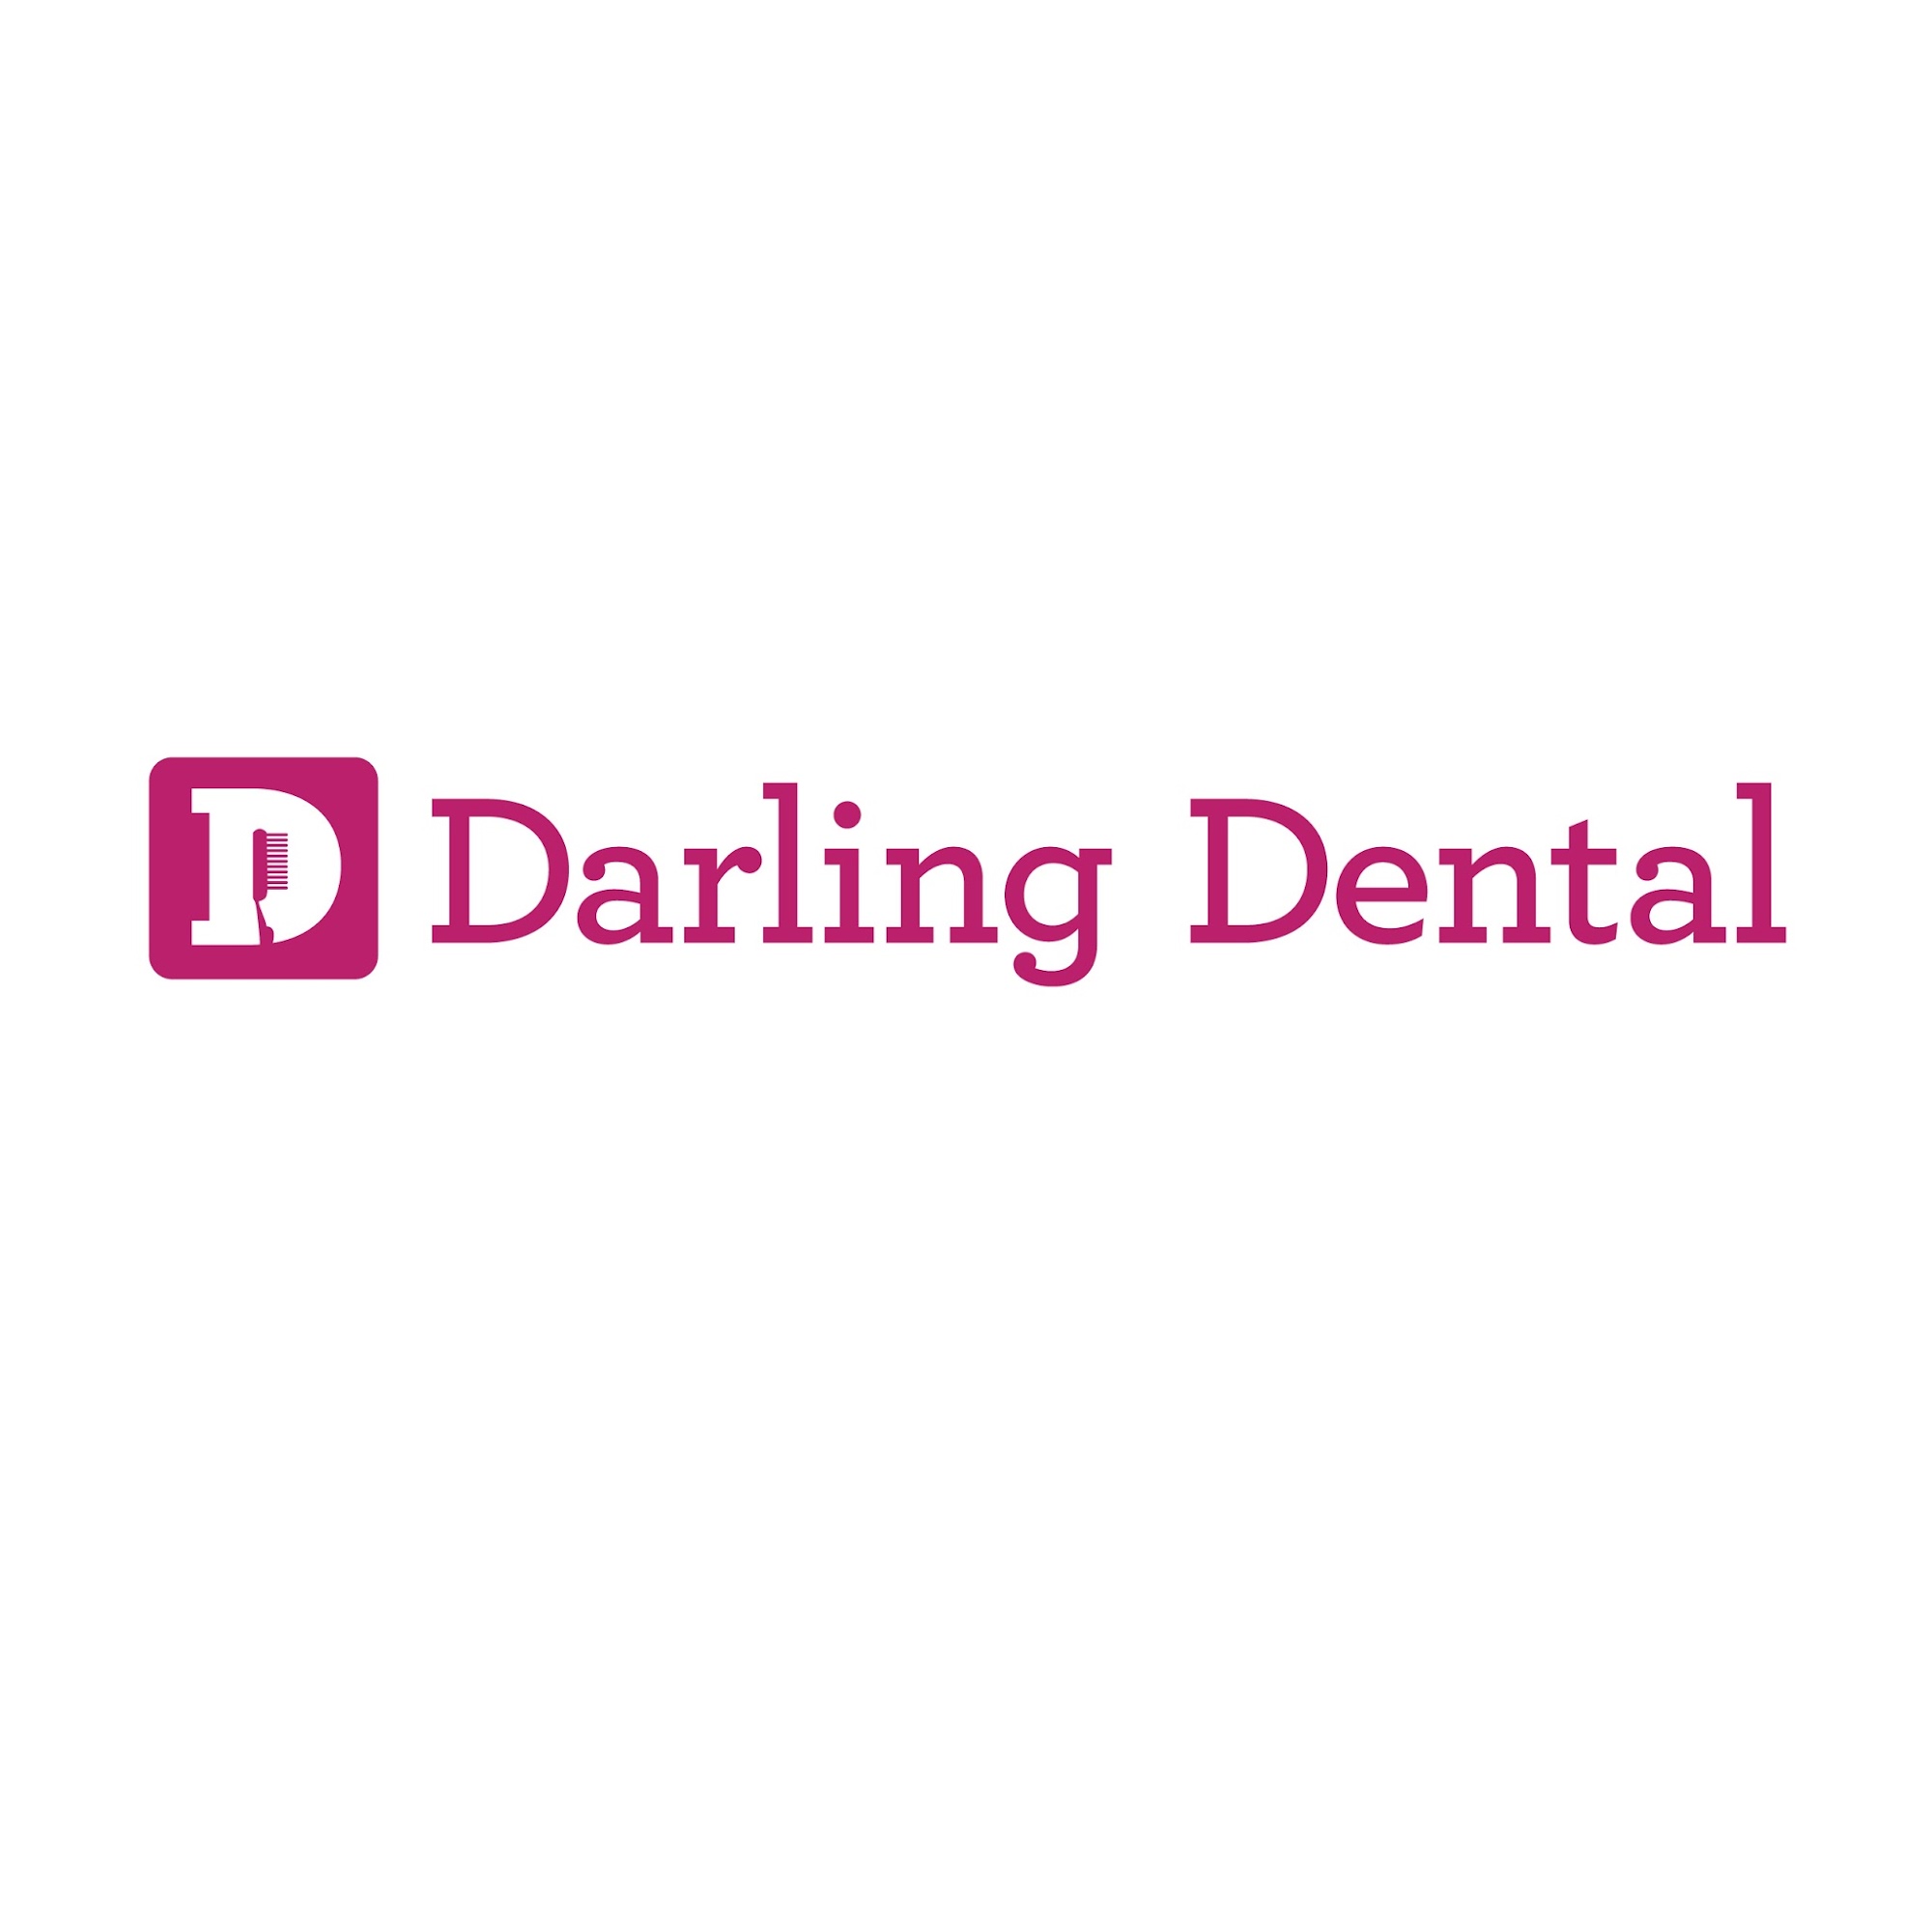 Darling Dental LLC 7161 N Port Washington Rd, Glendale Wisconsin 53217